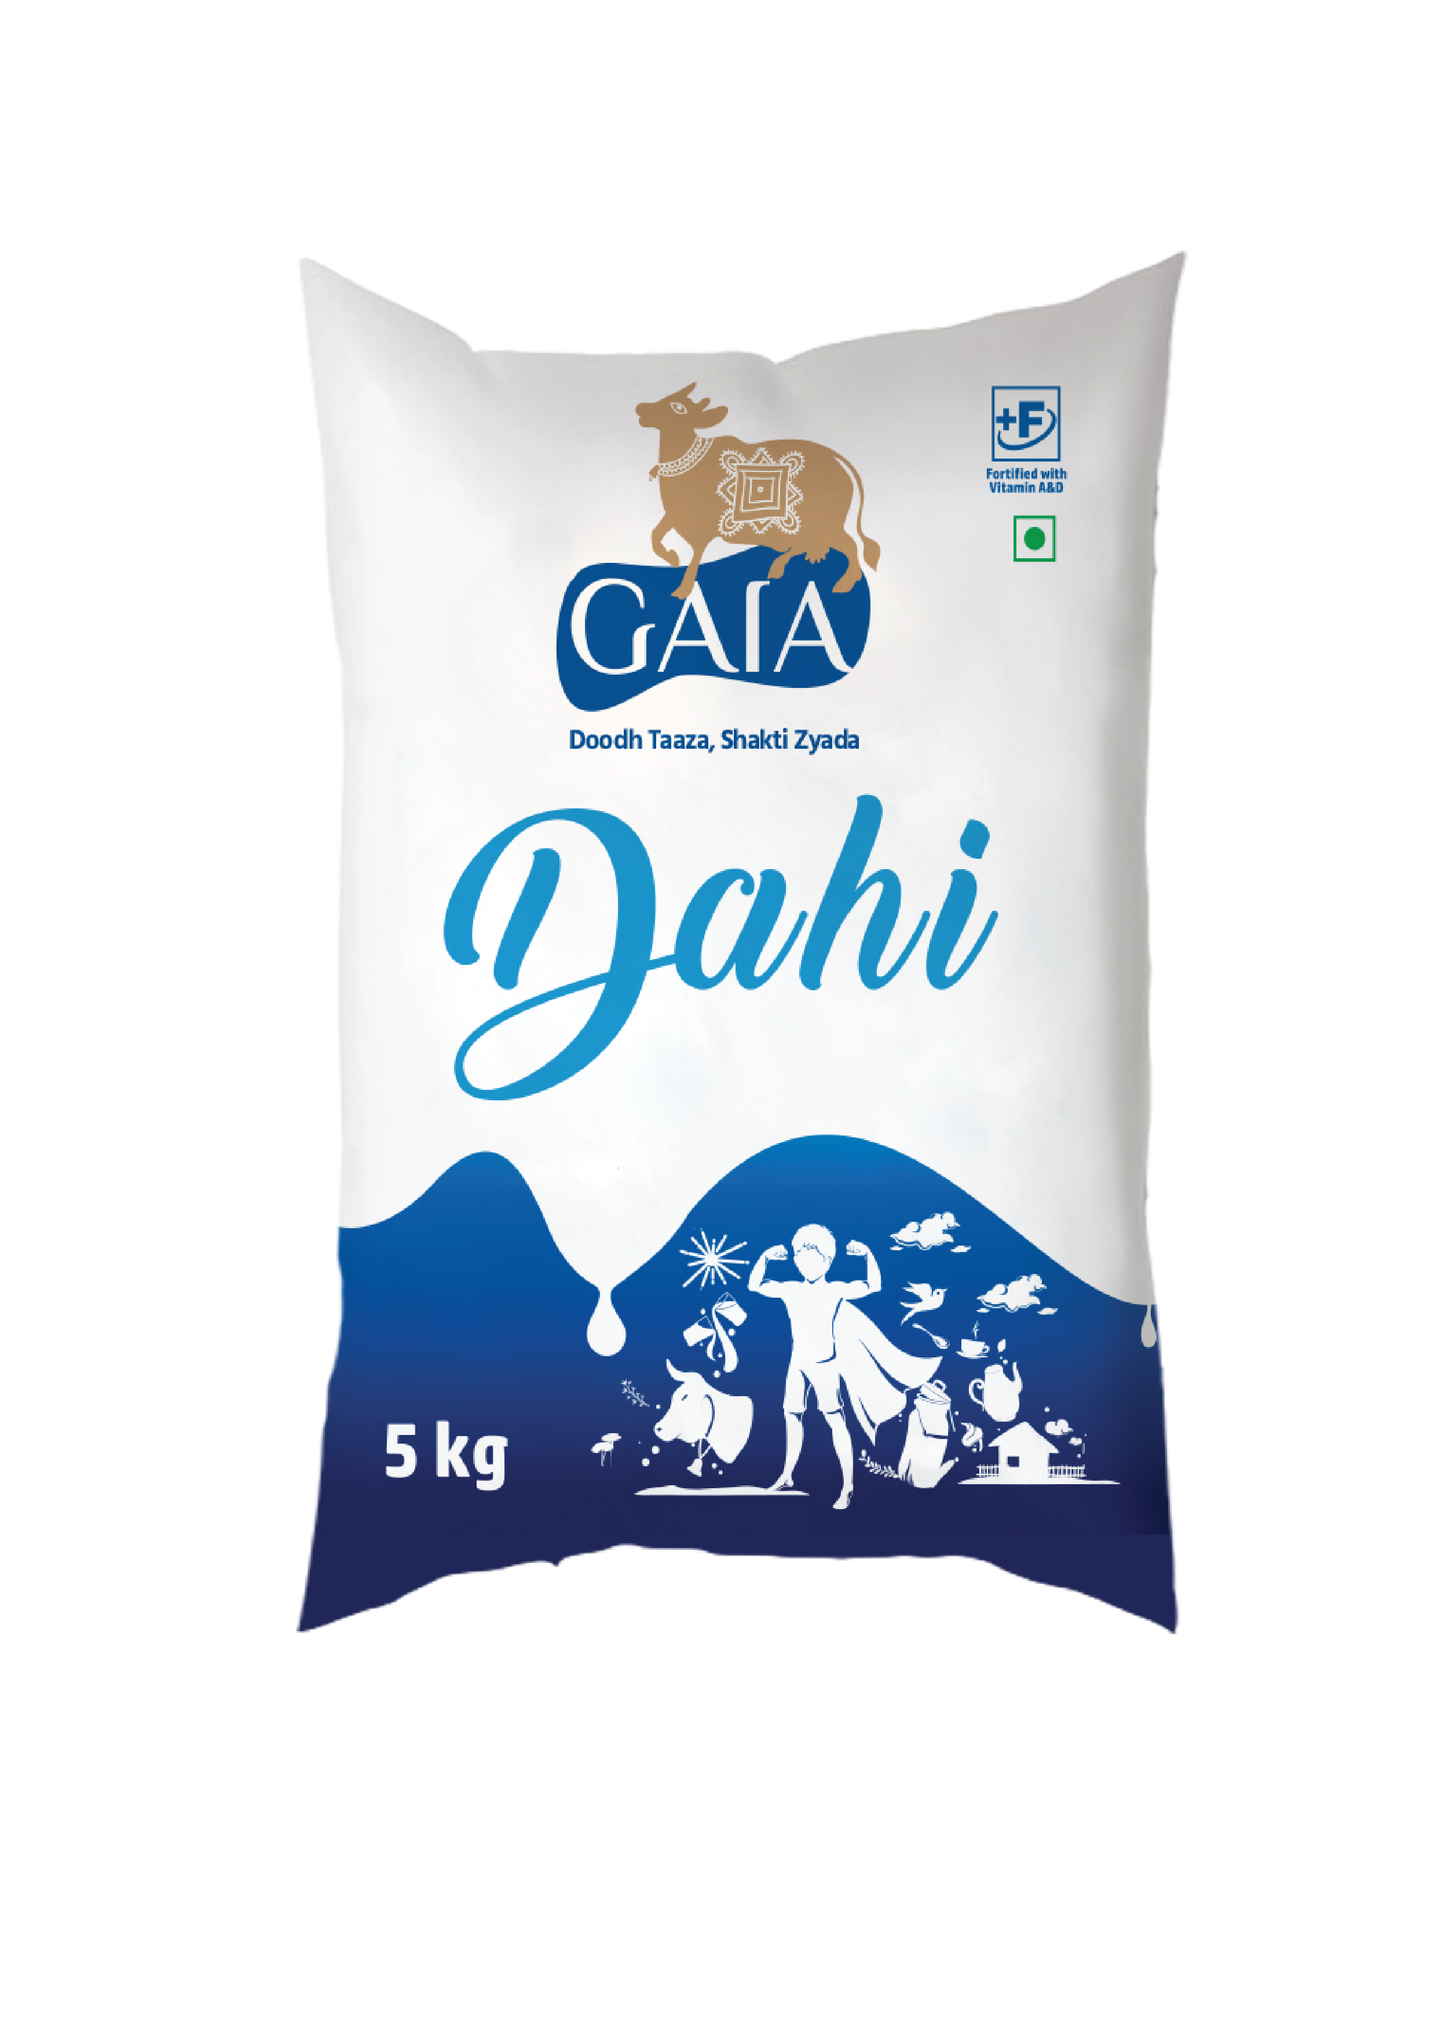 Gaia Dahi Pouch 5 Kg